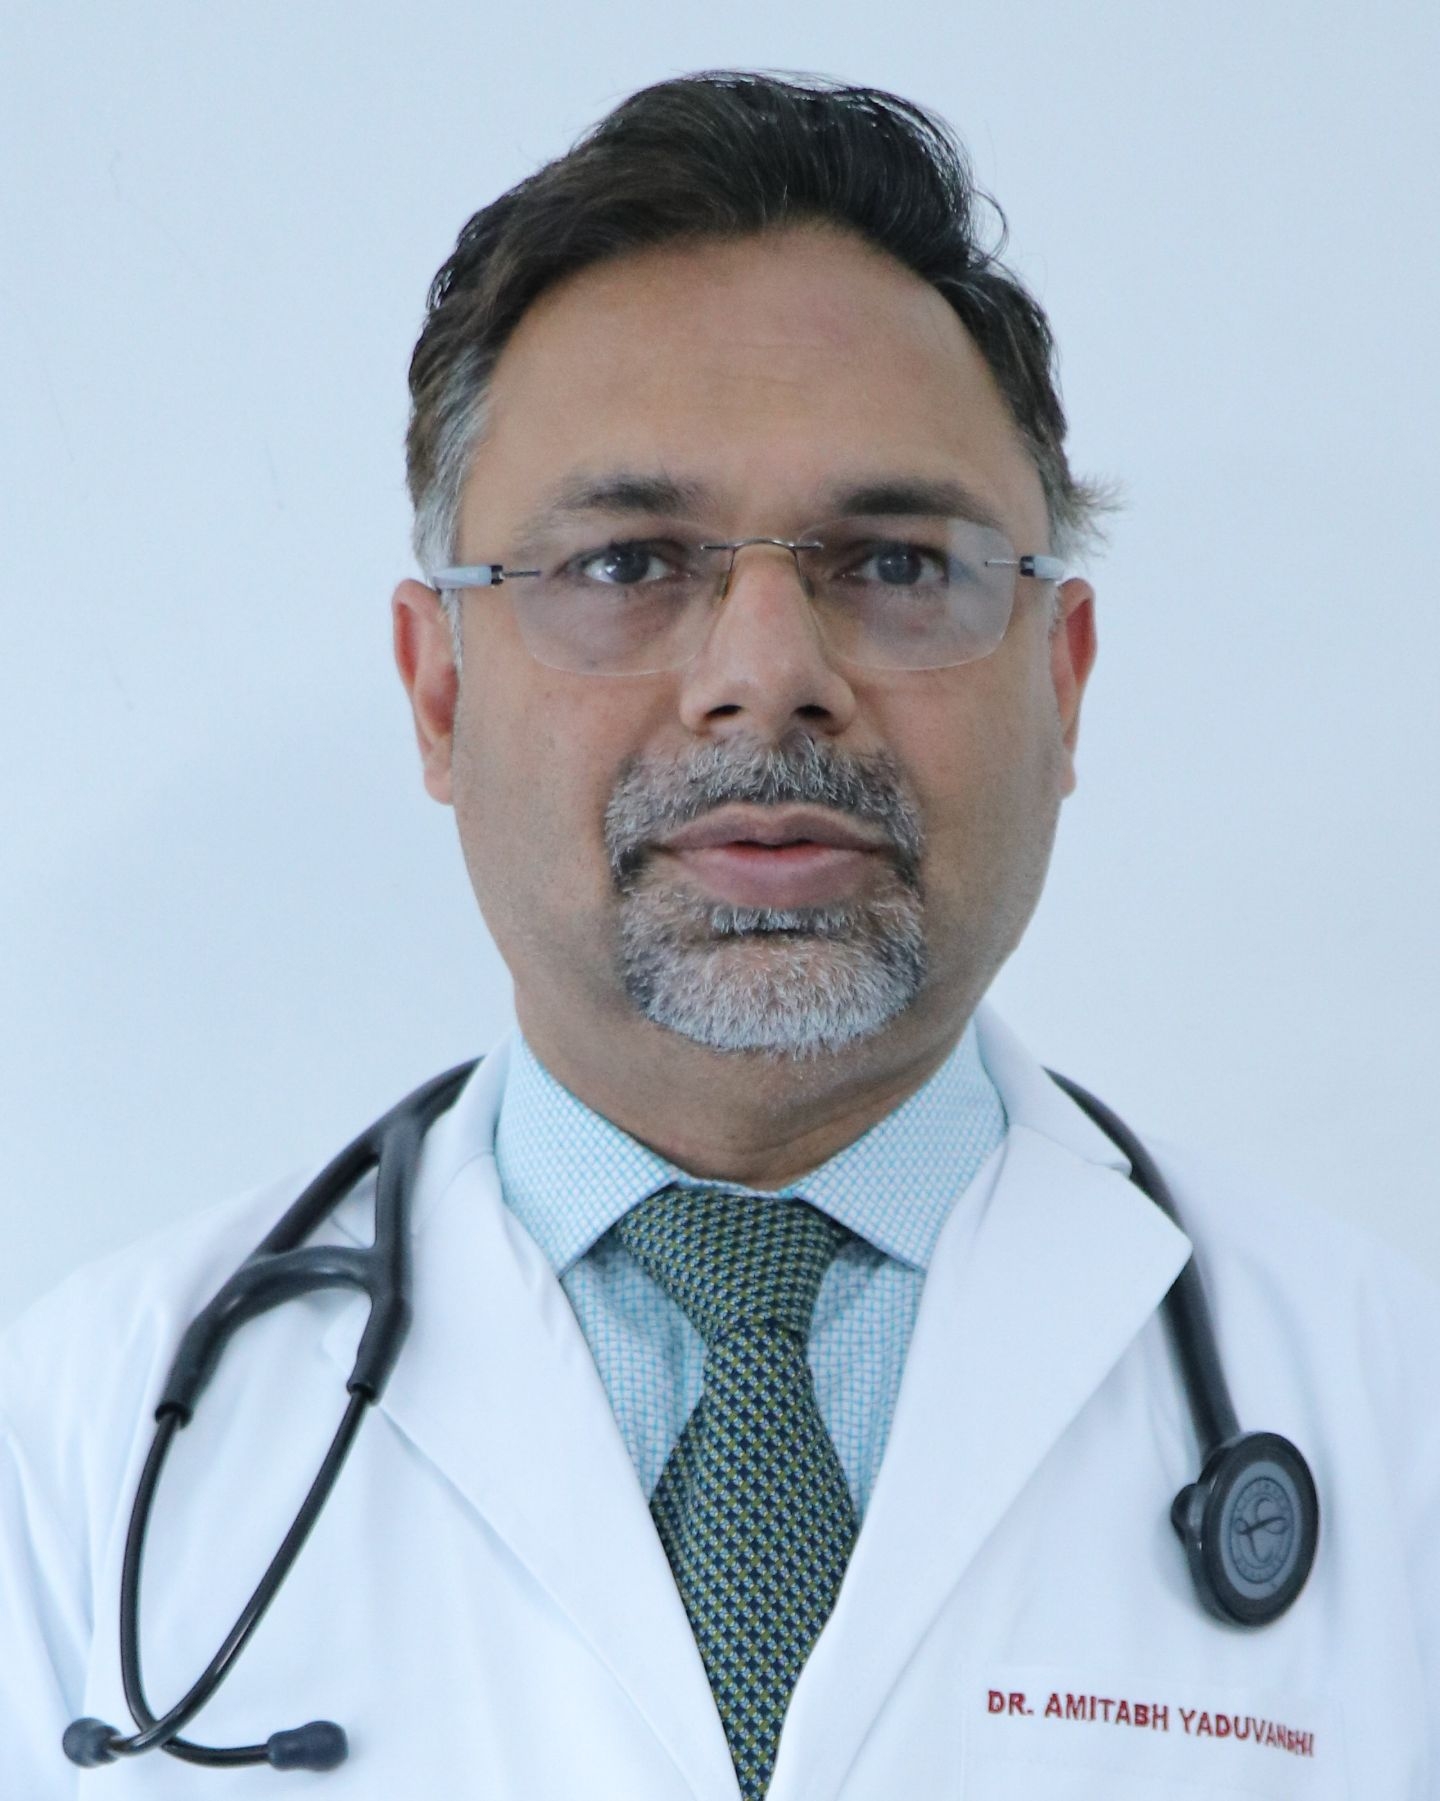 Dr. Amitabh yaduvanshi